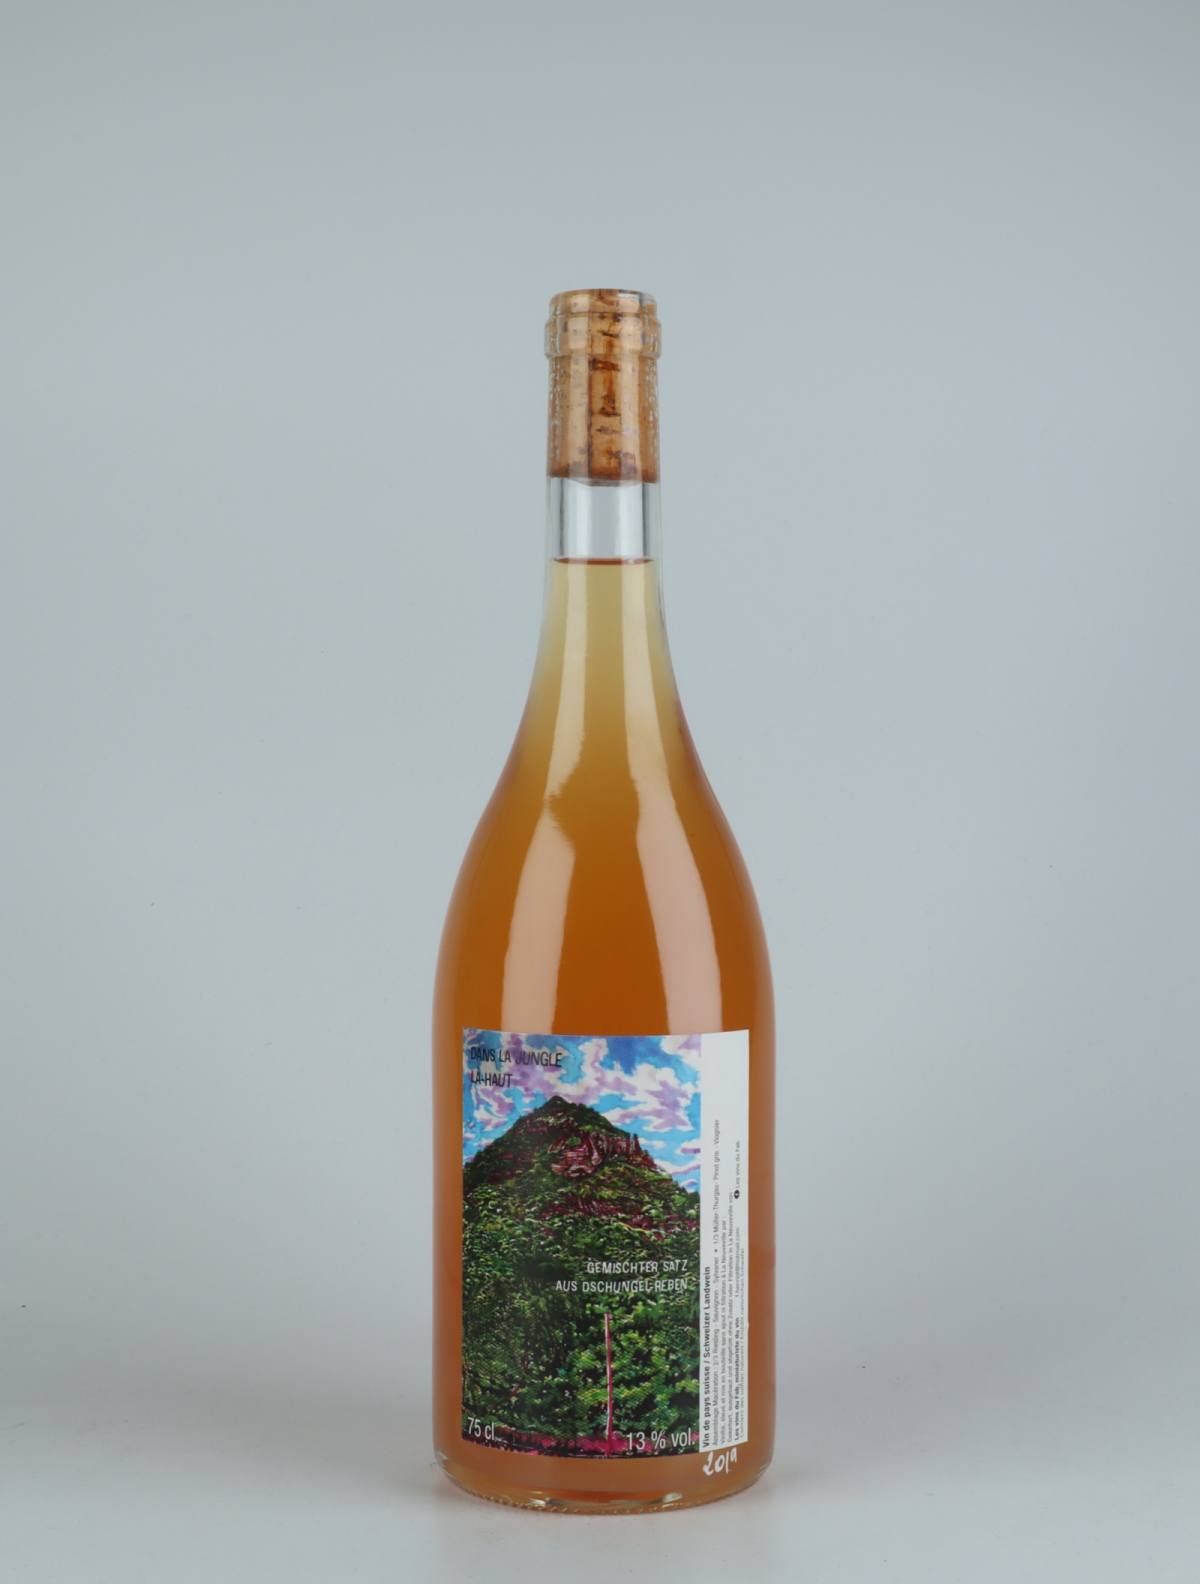 A bottle 2019 Dans la Jungle La-Haut Orange wine from Les Vins du Fab, Neuchâtel in Switzerland